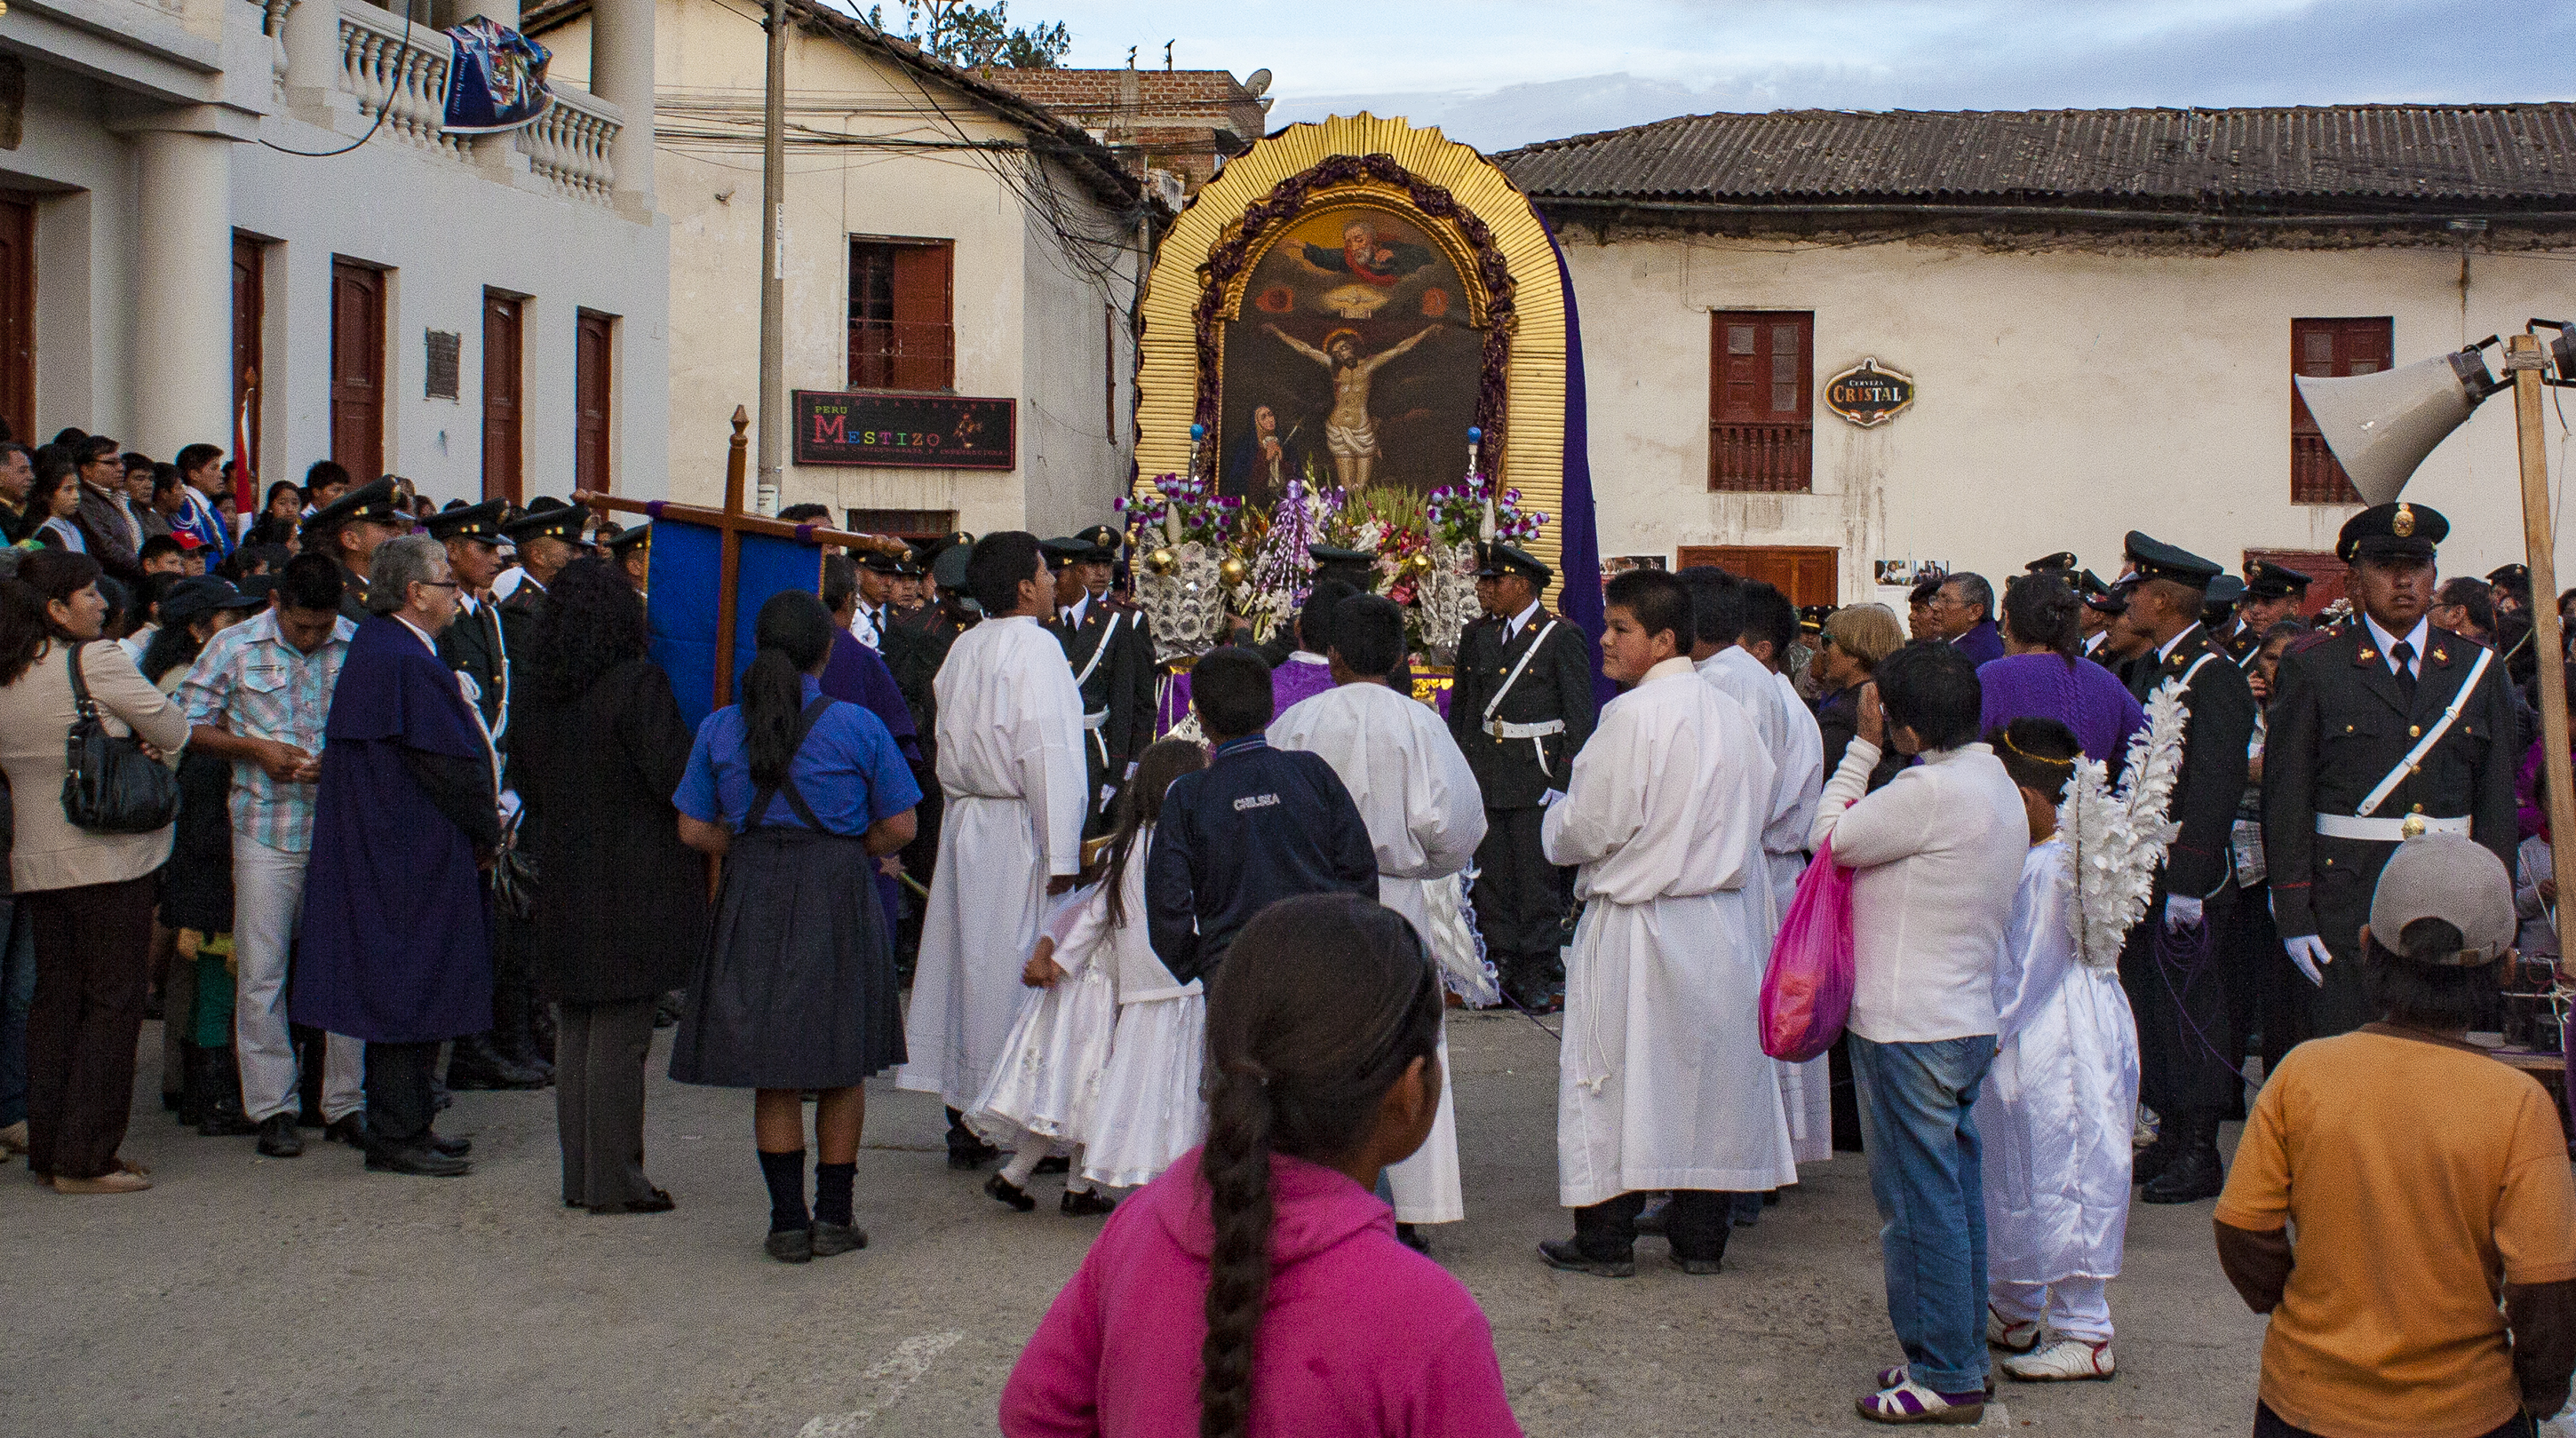 Fiestas del pueblo Andahuaylas, Region de Apurimac, Perú